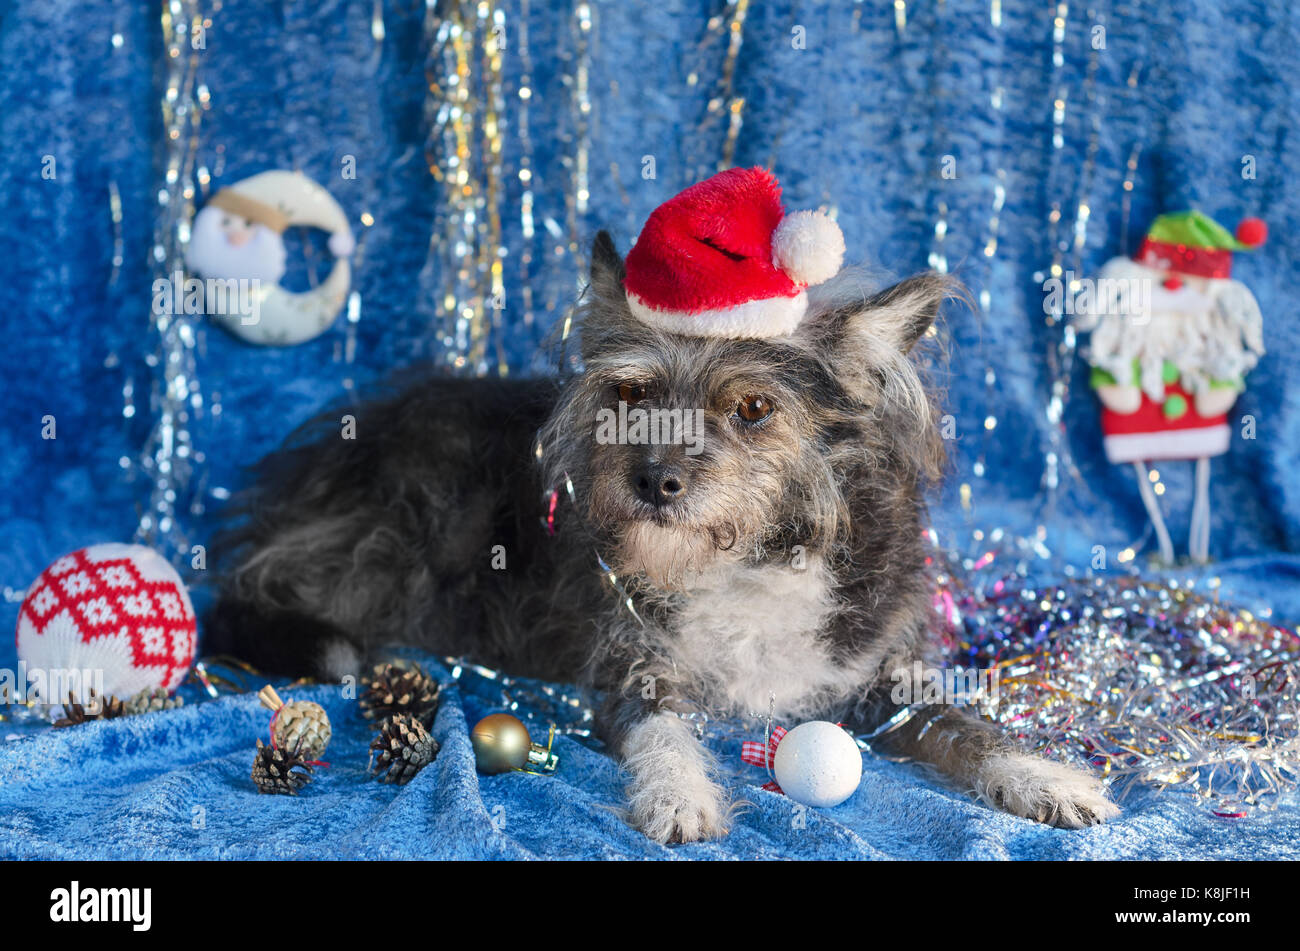 Lustig Hund in Weihnachten Hintergrund Stockfotografie - Alamy